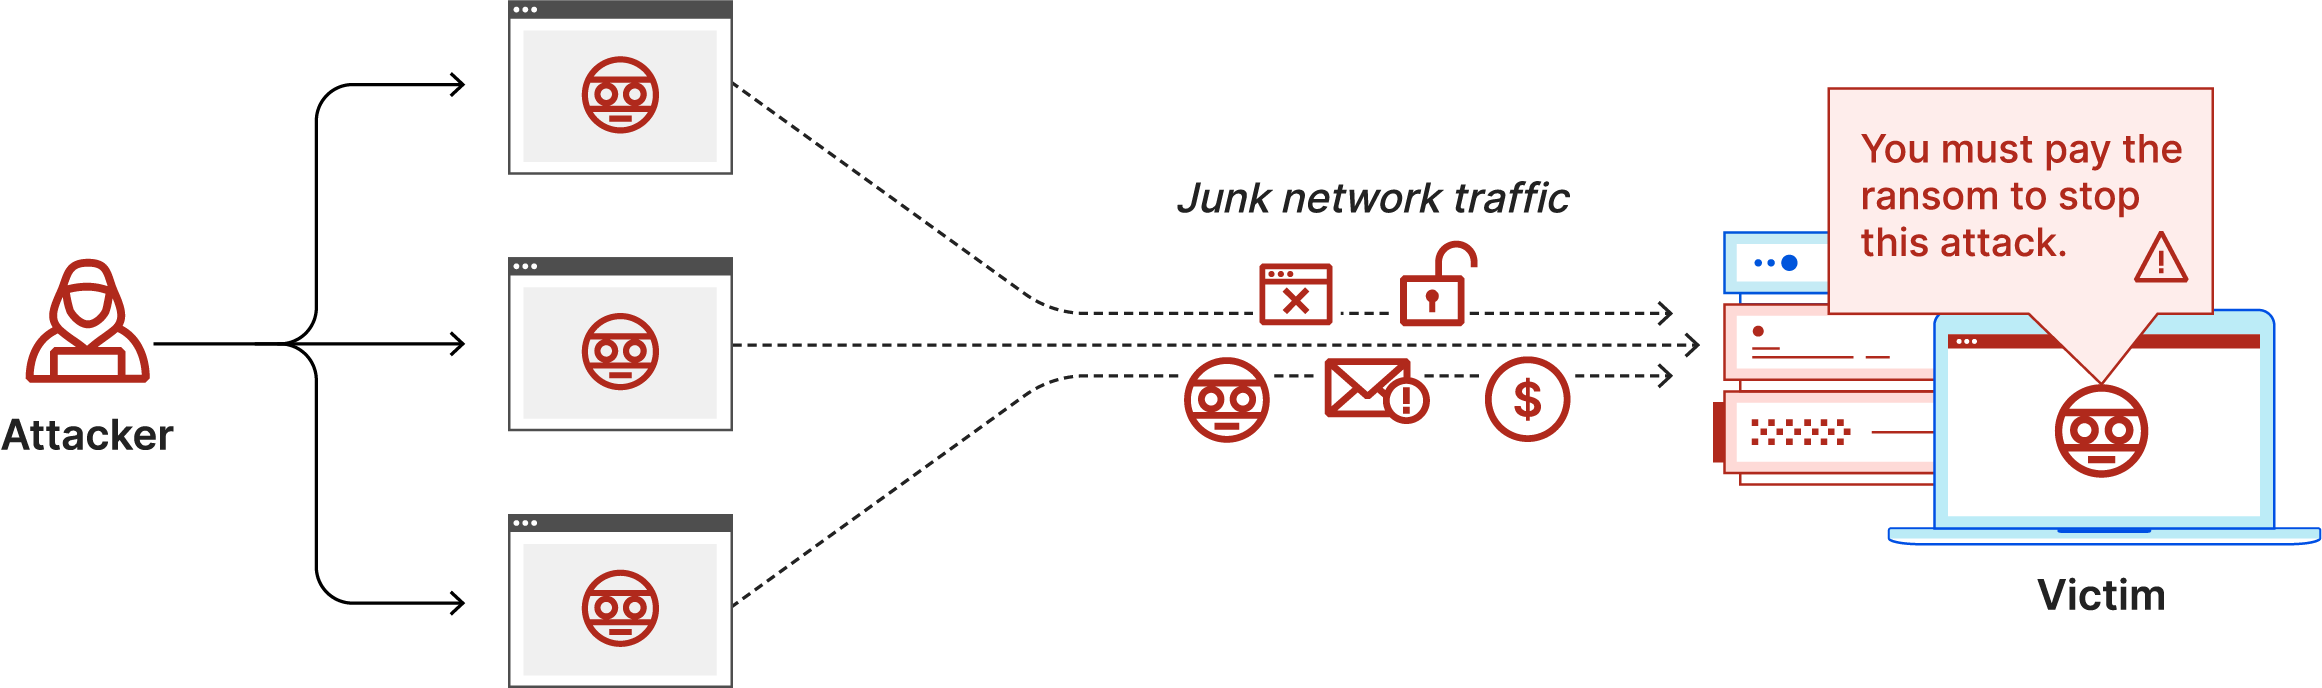 랜섬 DDoS 공격 다이어그램: 공격자가 피해자에게 정크 네트워크 트래픽 및 랜섬 메모 전송